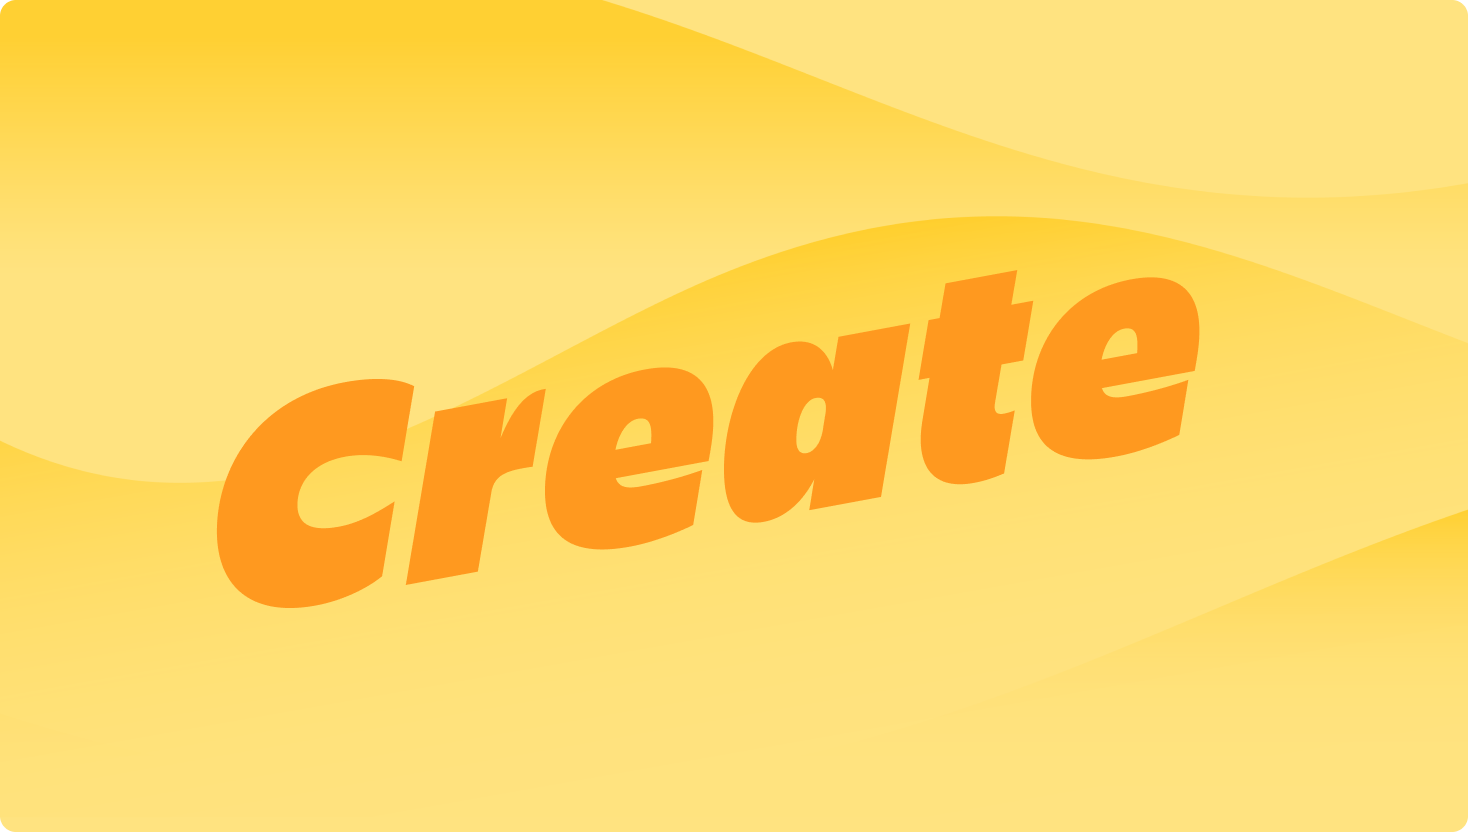 Imagen de ondas amarillas con la palabra "Create" (Crear) en un lugar destacado